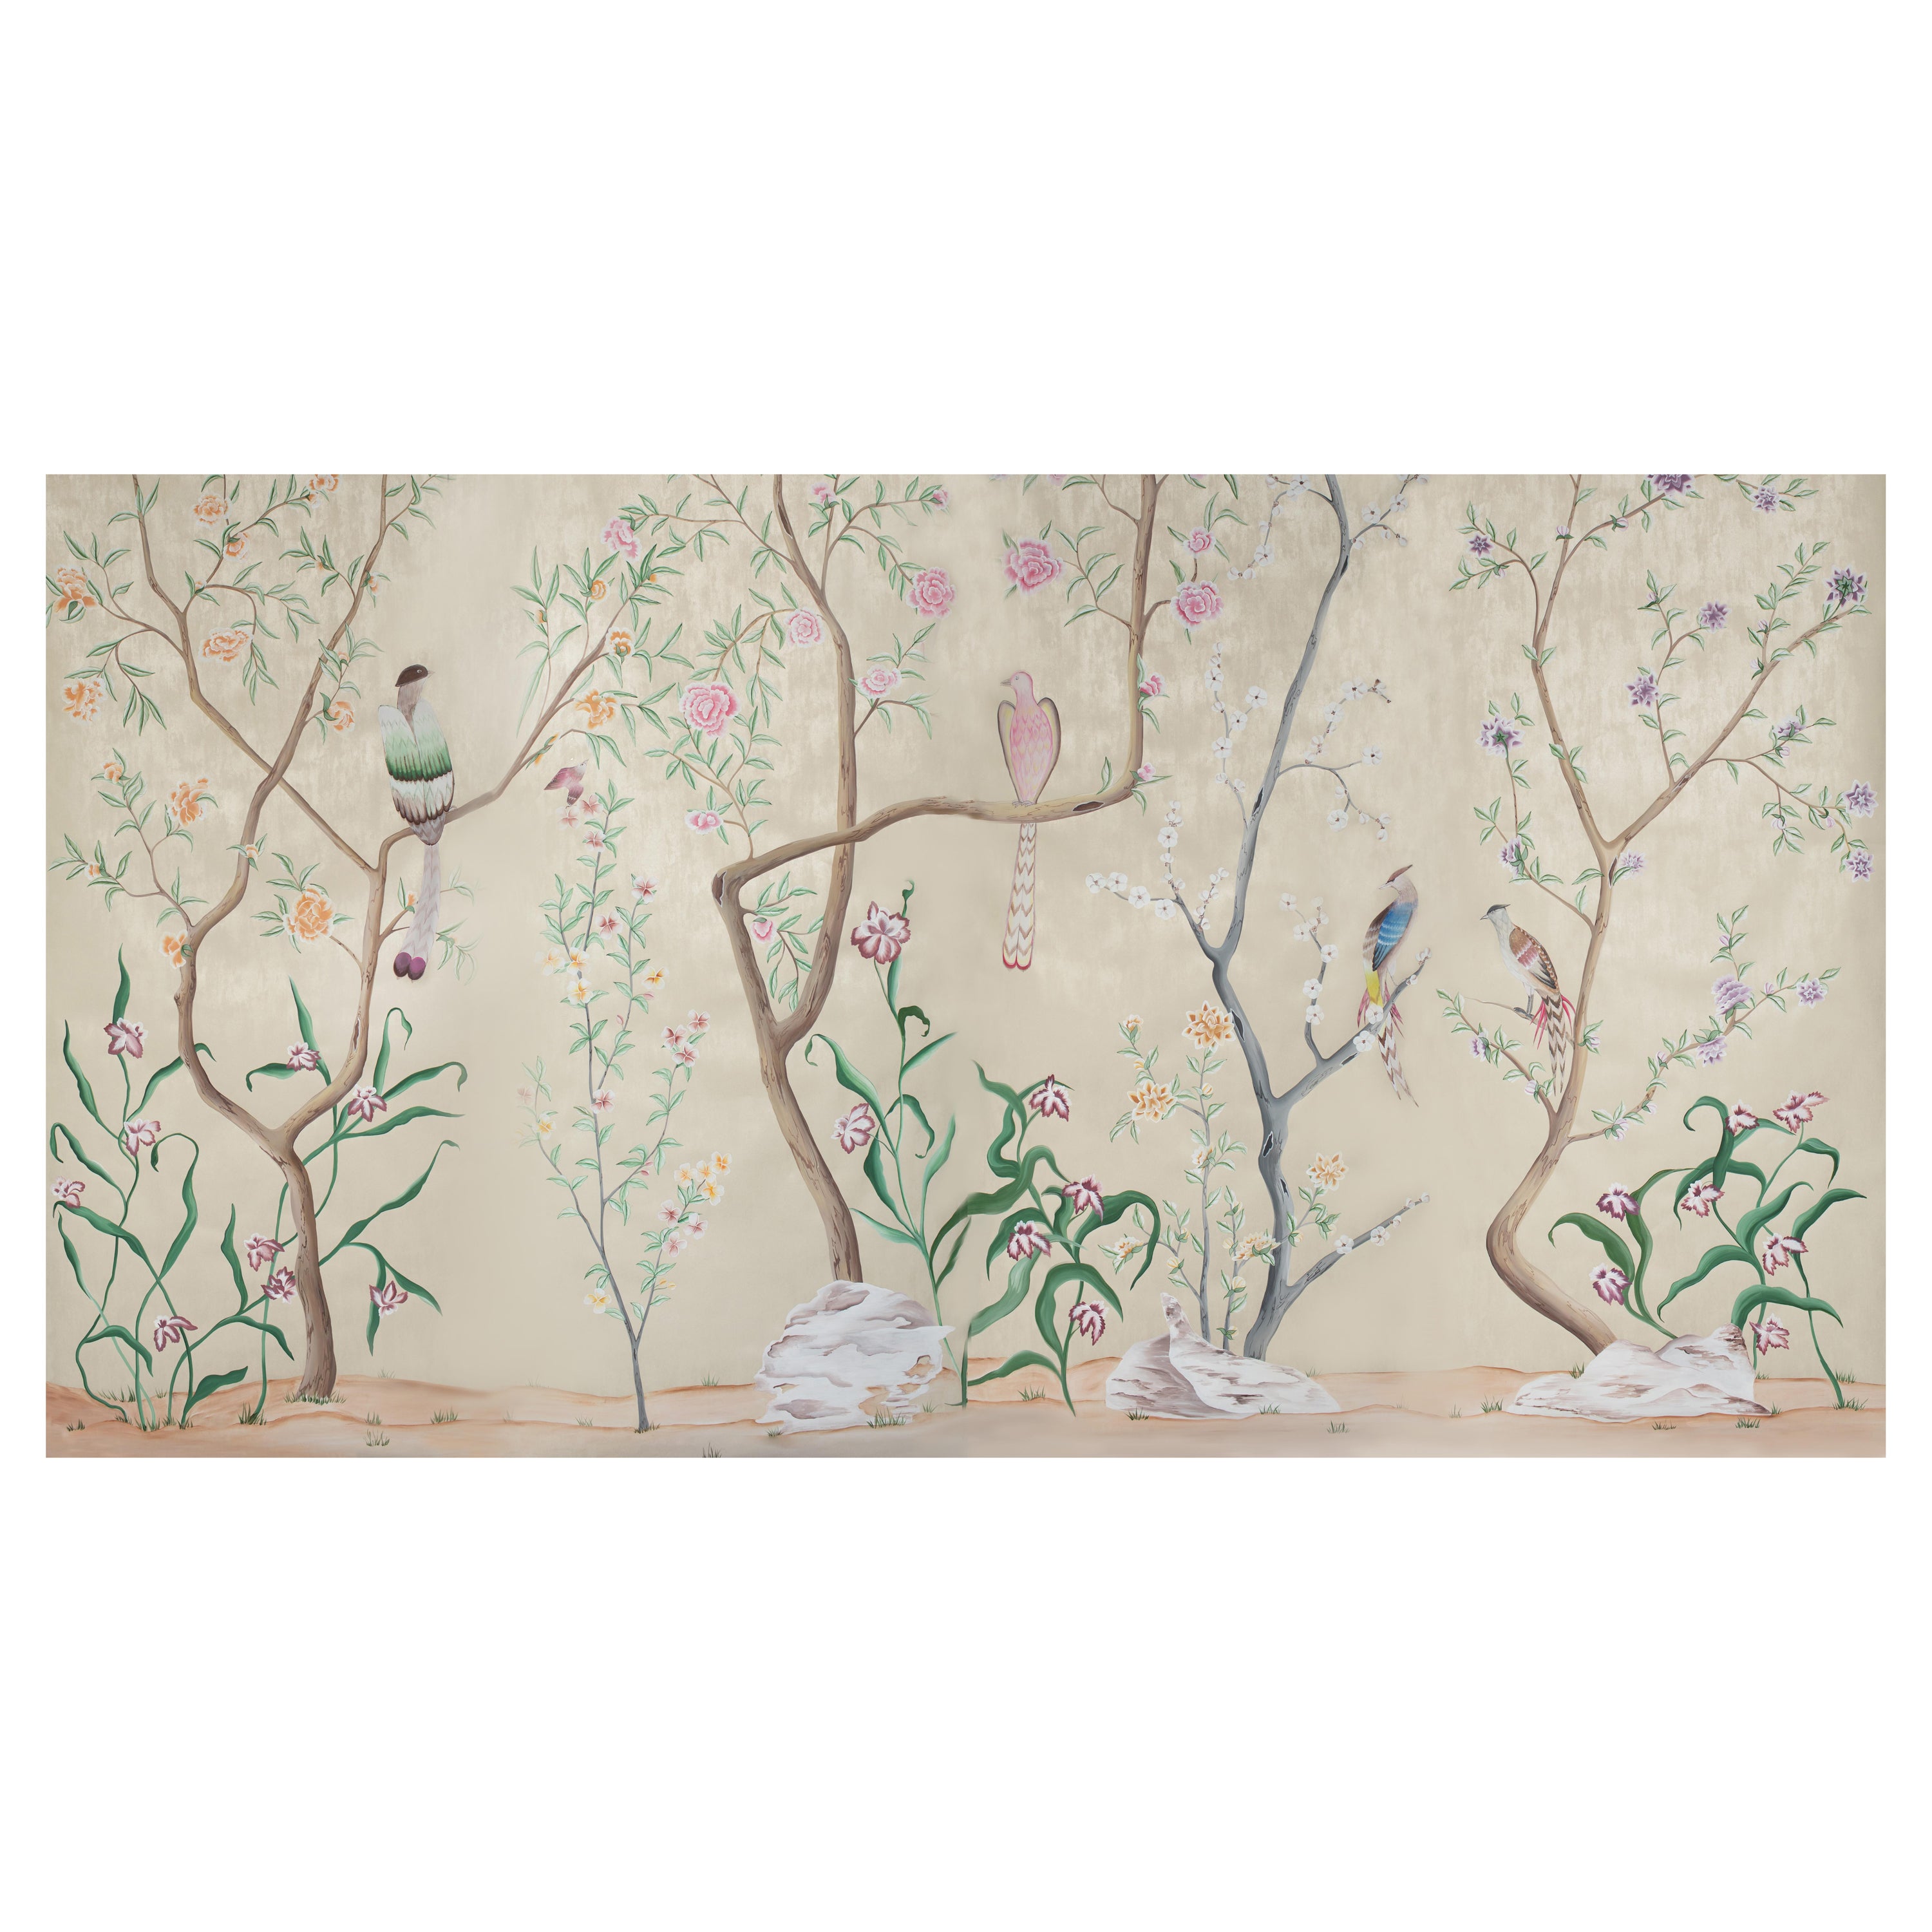 Chinoiserie Handpainted Chinese Wallpaper Bridgerton Tribute to Danbury For Sale